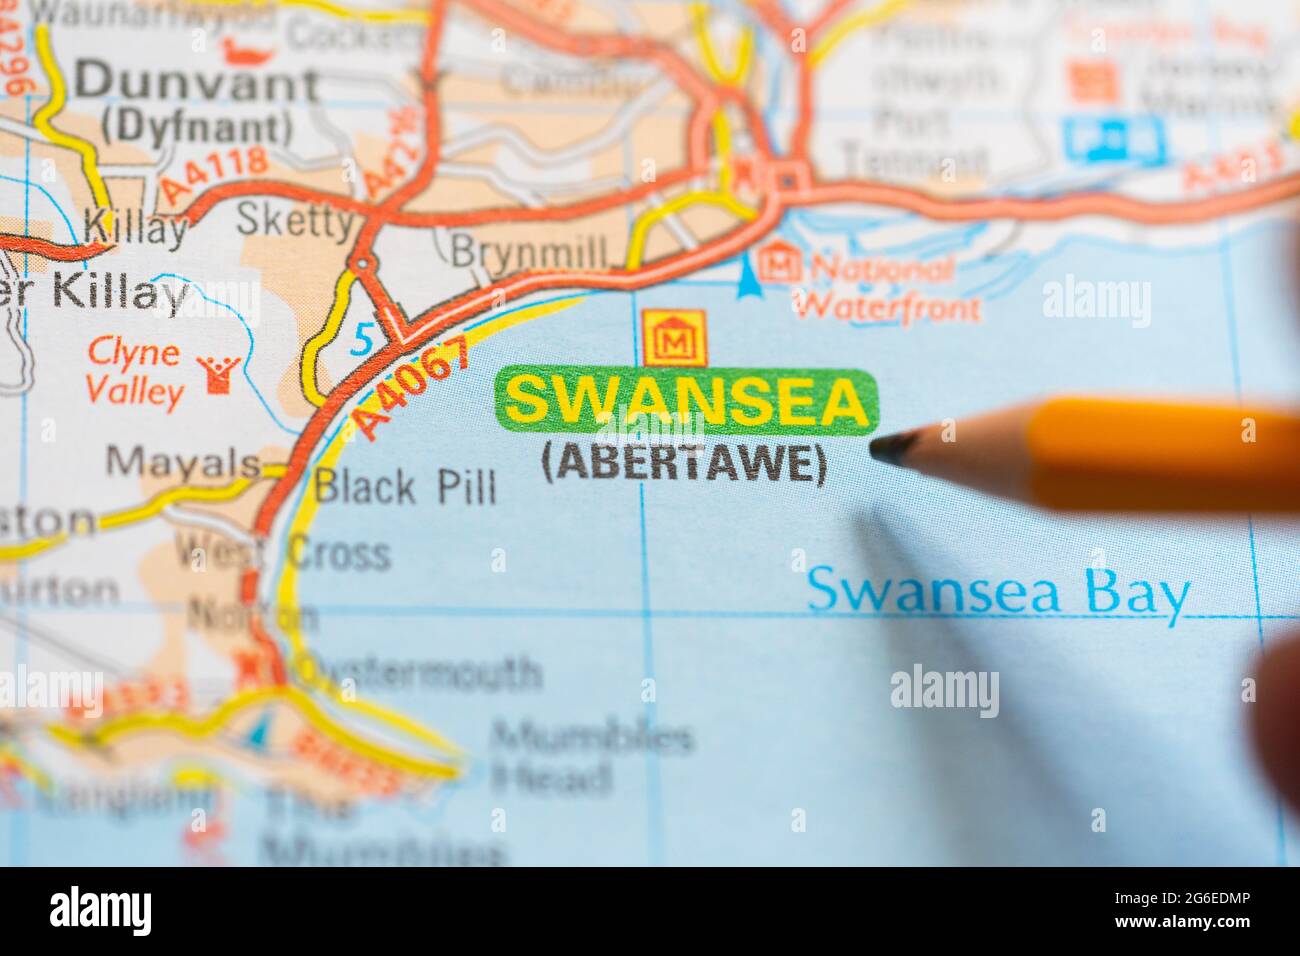 Eine Makroaufnahme einer Seite in einem gedruckten Roadmap-Atlas mit einer Männerhand, die einen Bleistift hält und auf die Stadt Swansea in Wales zeigt Stockfoto